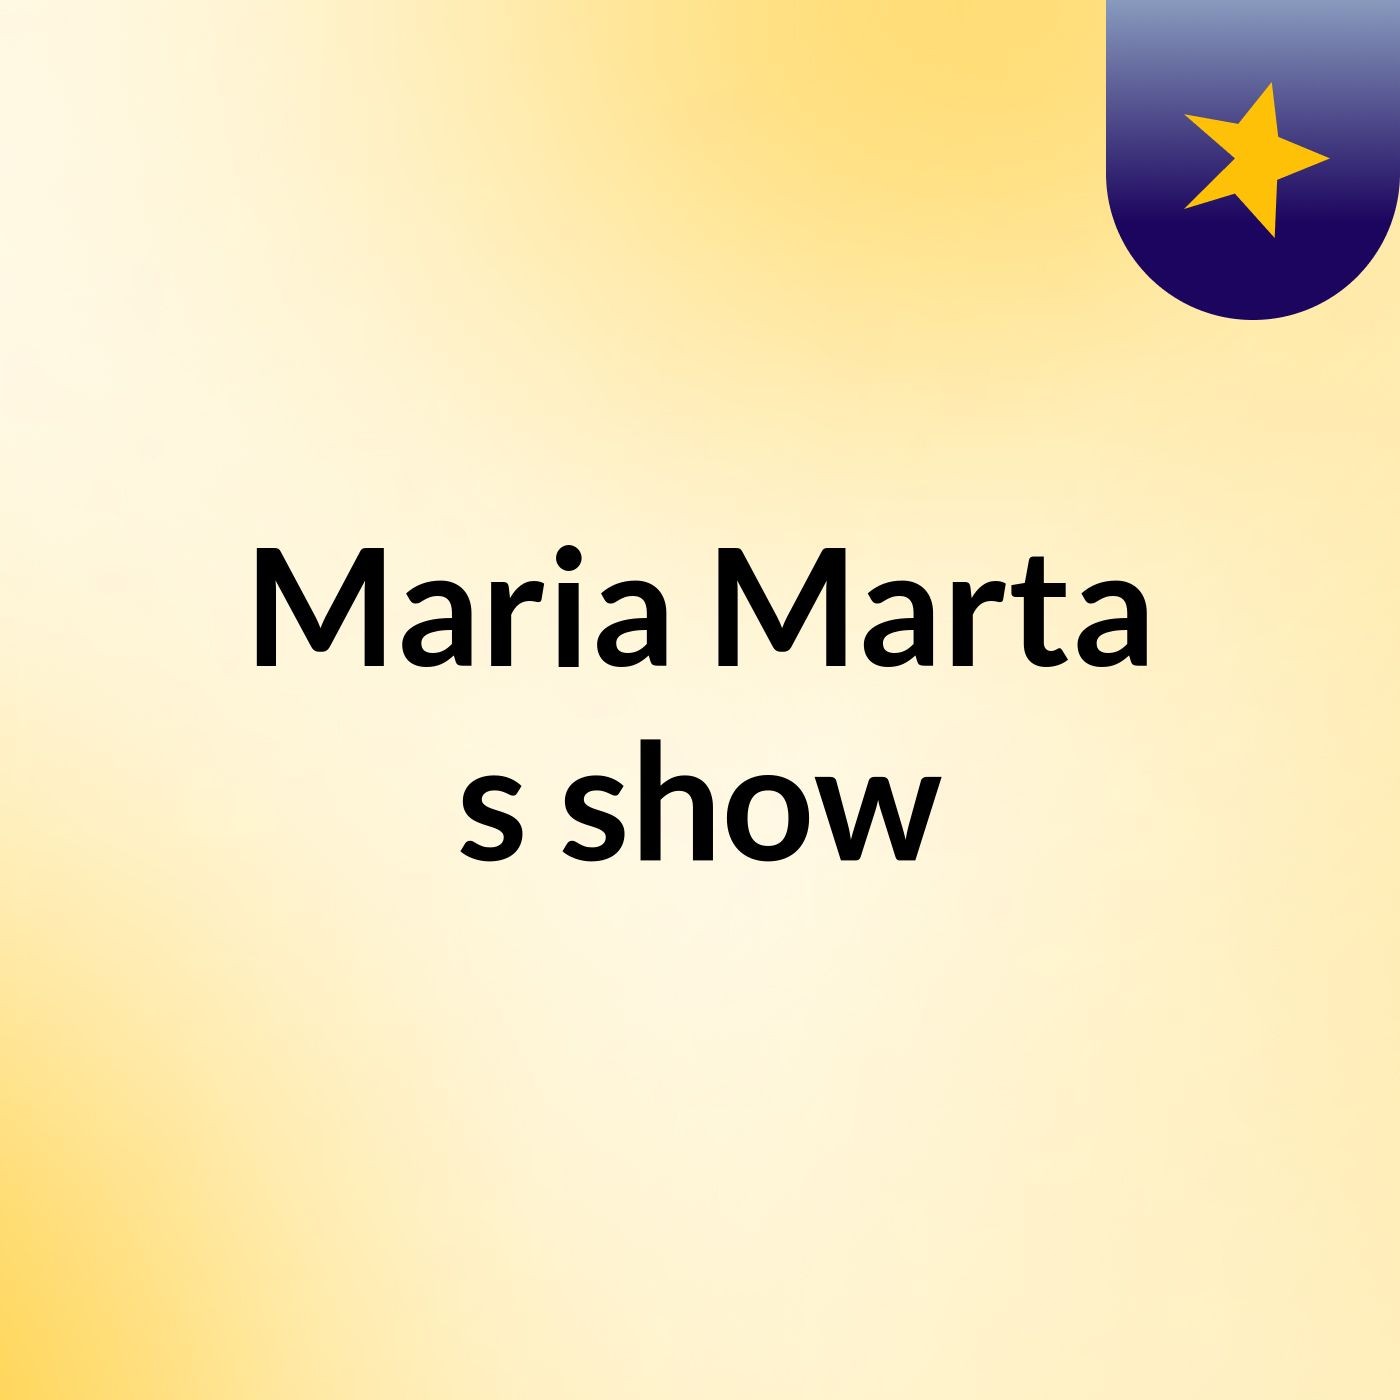 Maria Marta's show